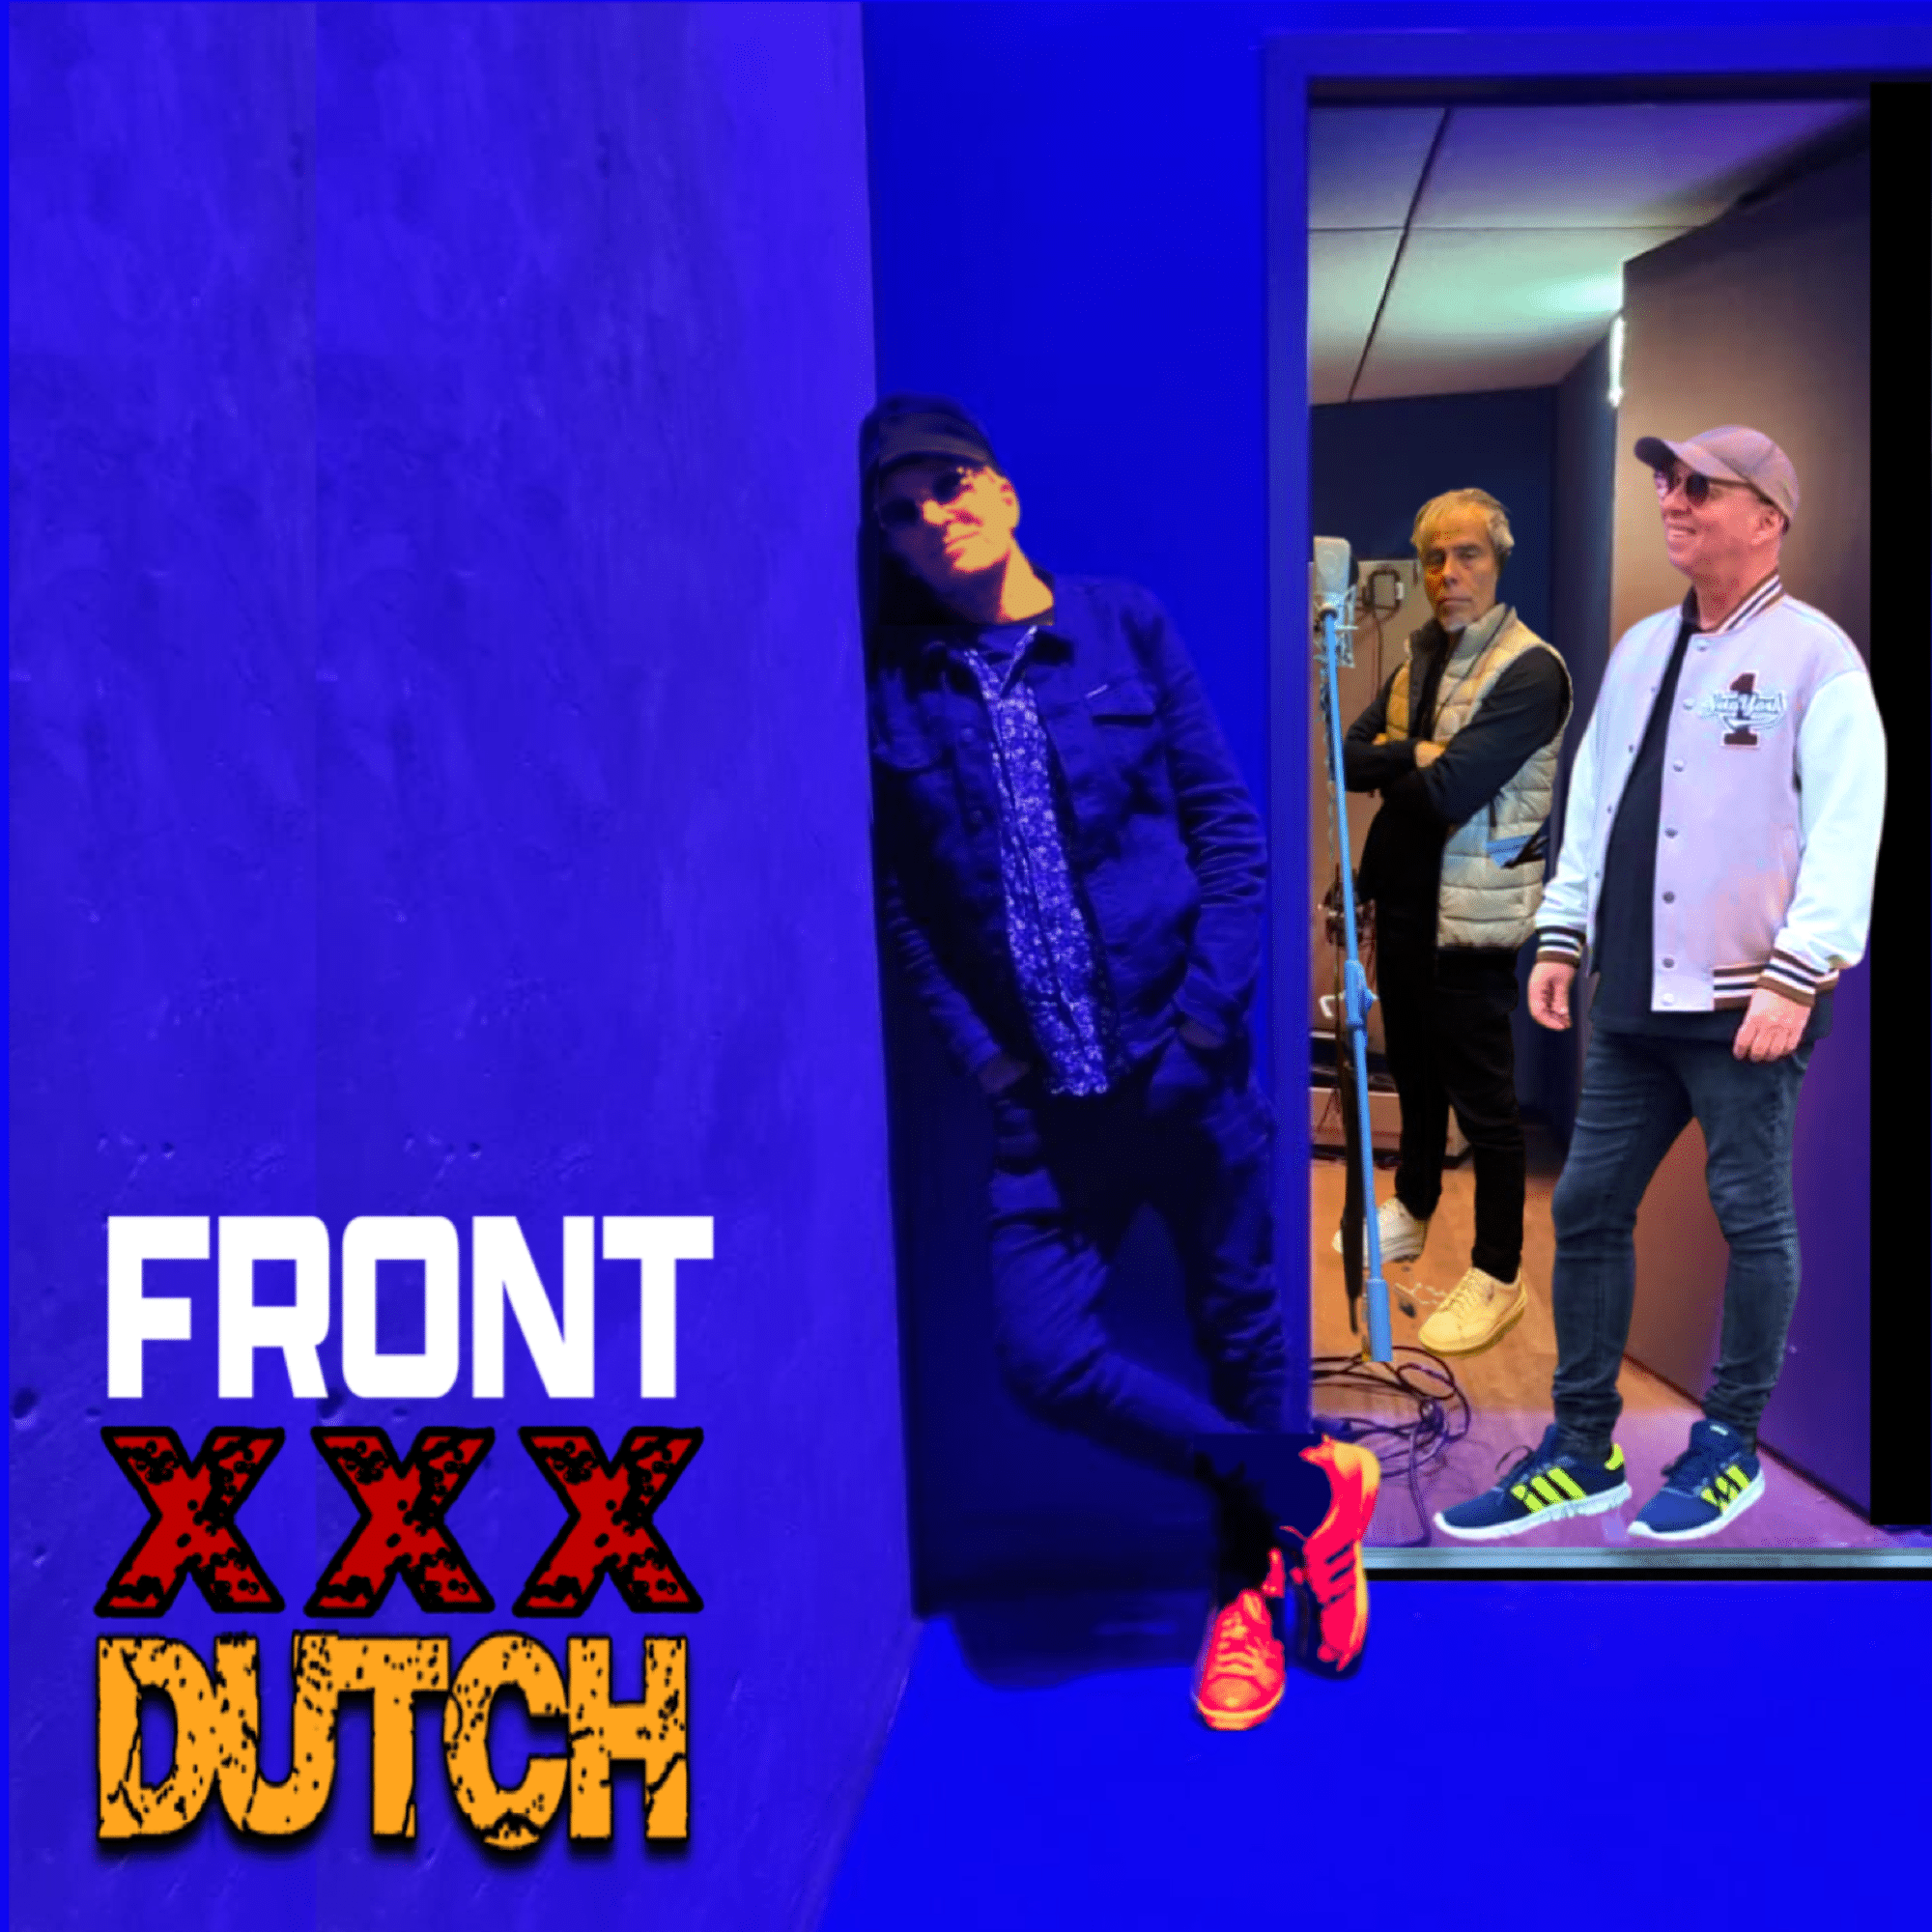 revistaprosaversoearte.com - 'XXX Dutch', novo álbum do grupo Front chega às plataformas digitais